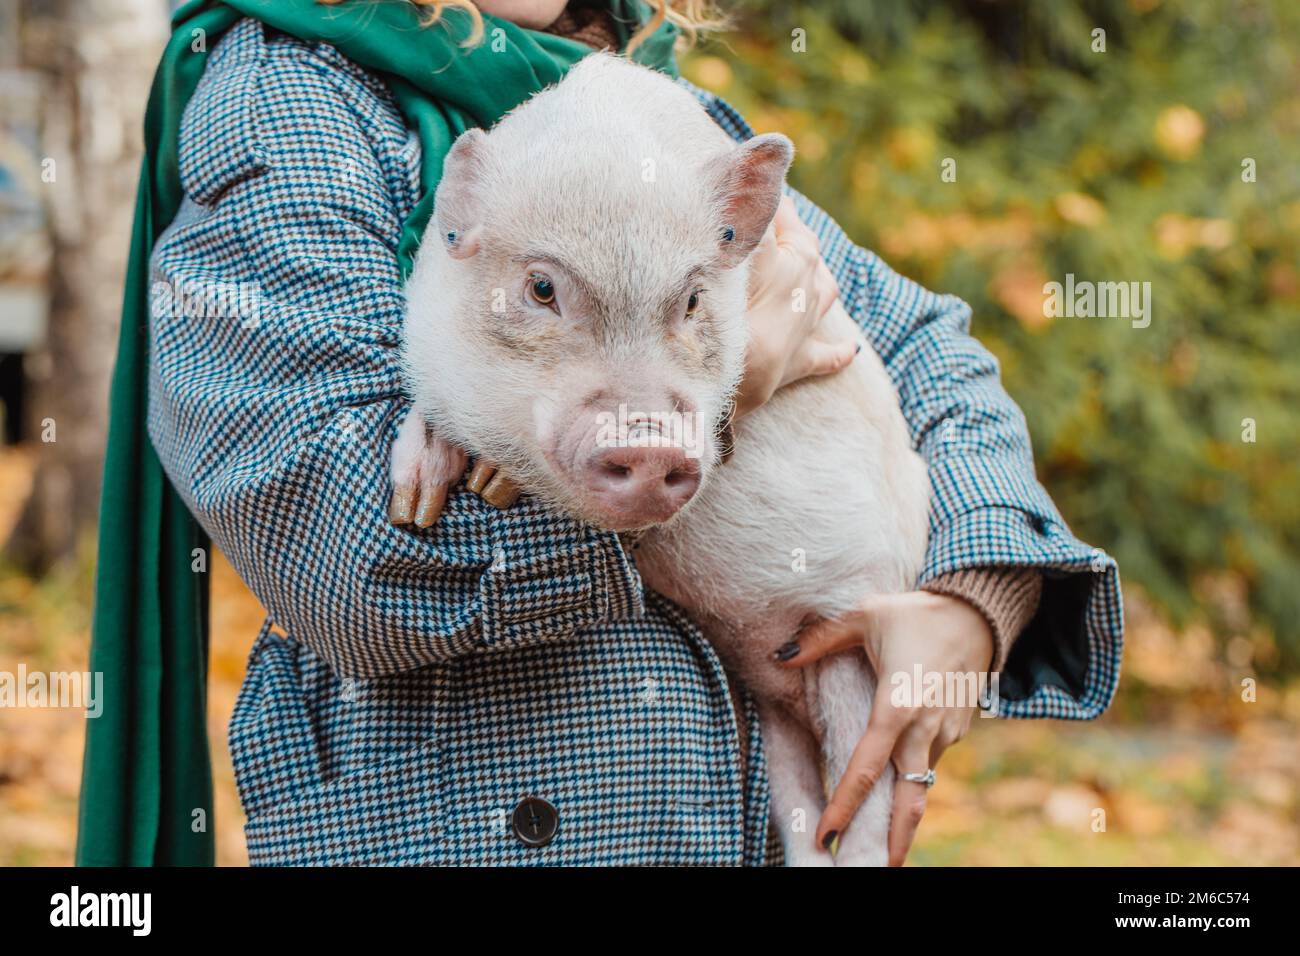 La fille dans ses bras tient un mini-cochon blanc Banque D'Images